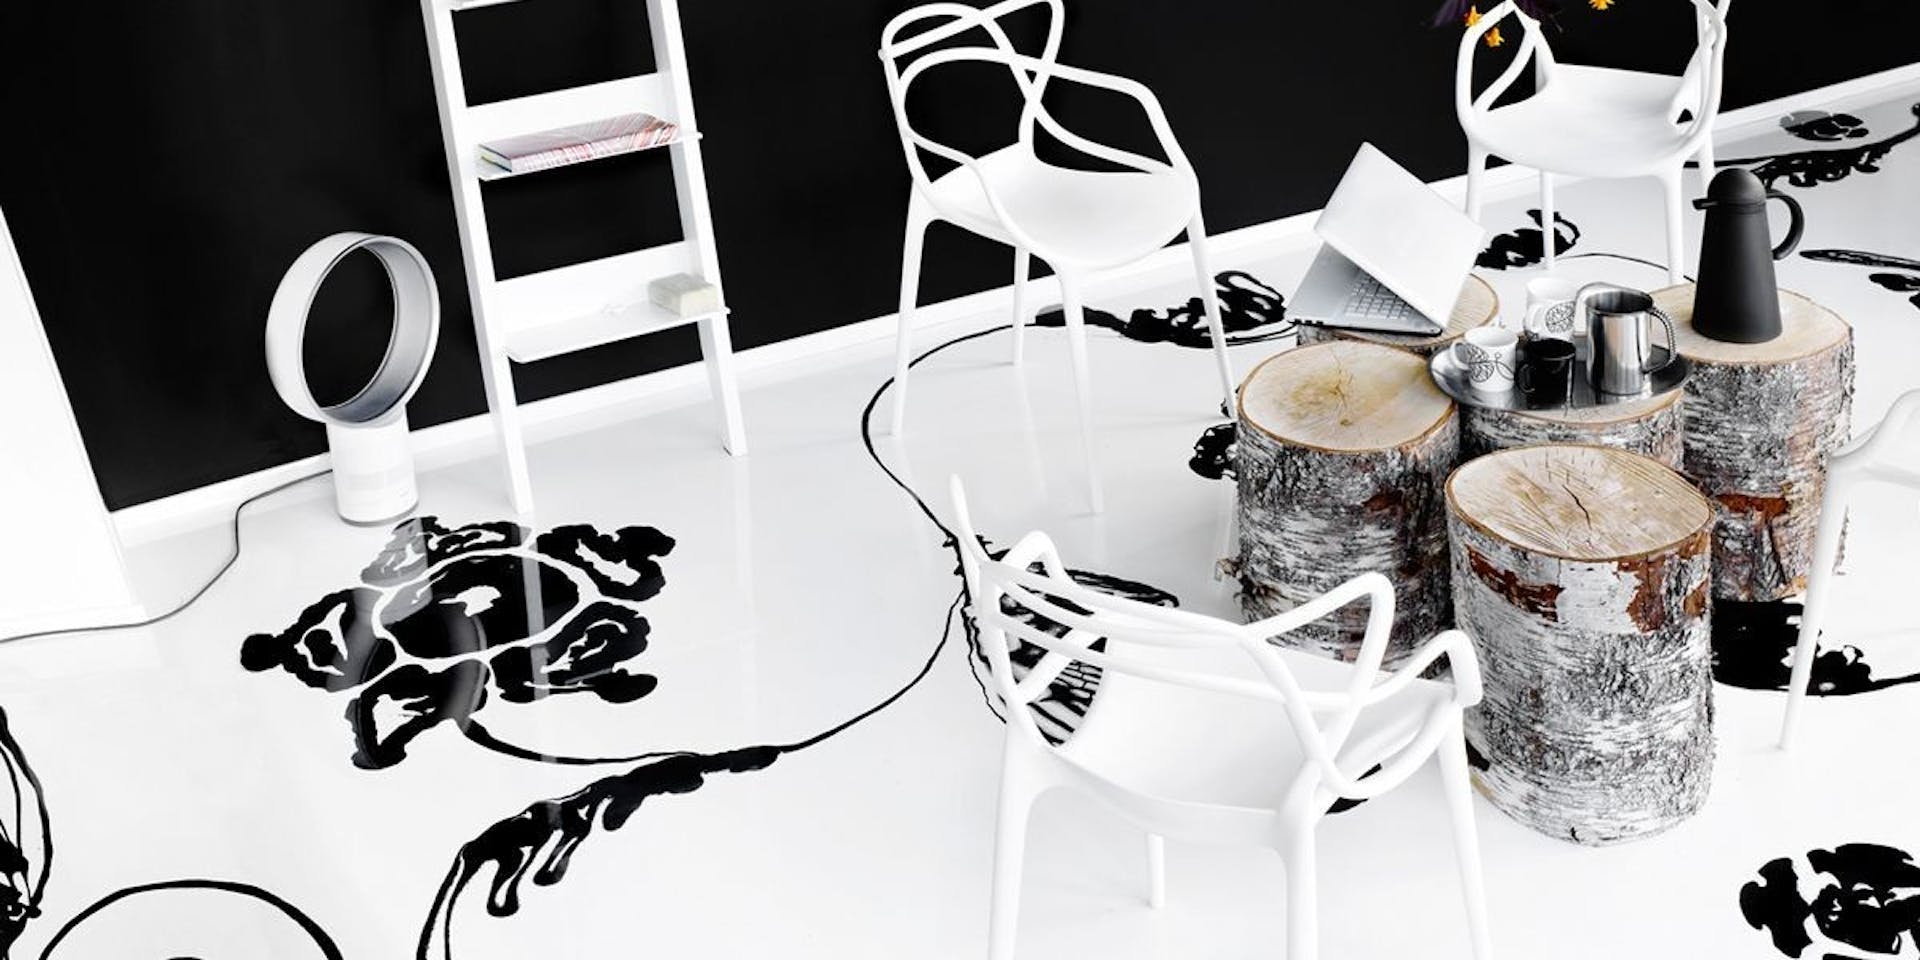 Free-hand Design Floor Patterning - Black & White Contrast Design | Tikkurila 